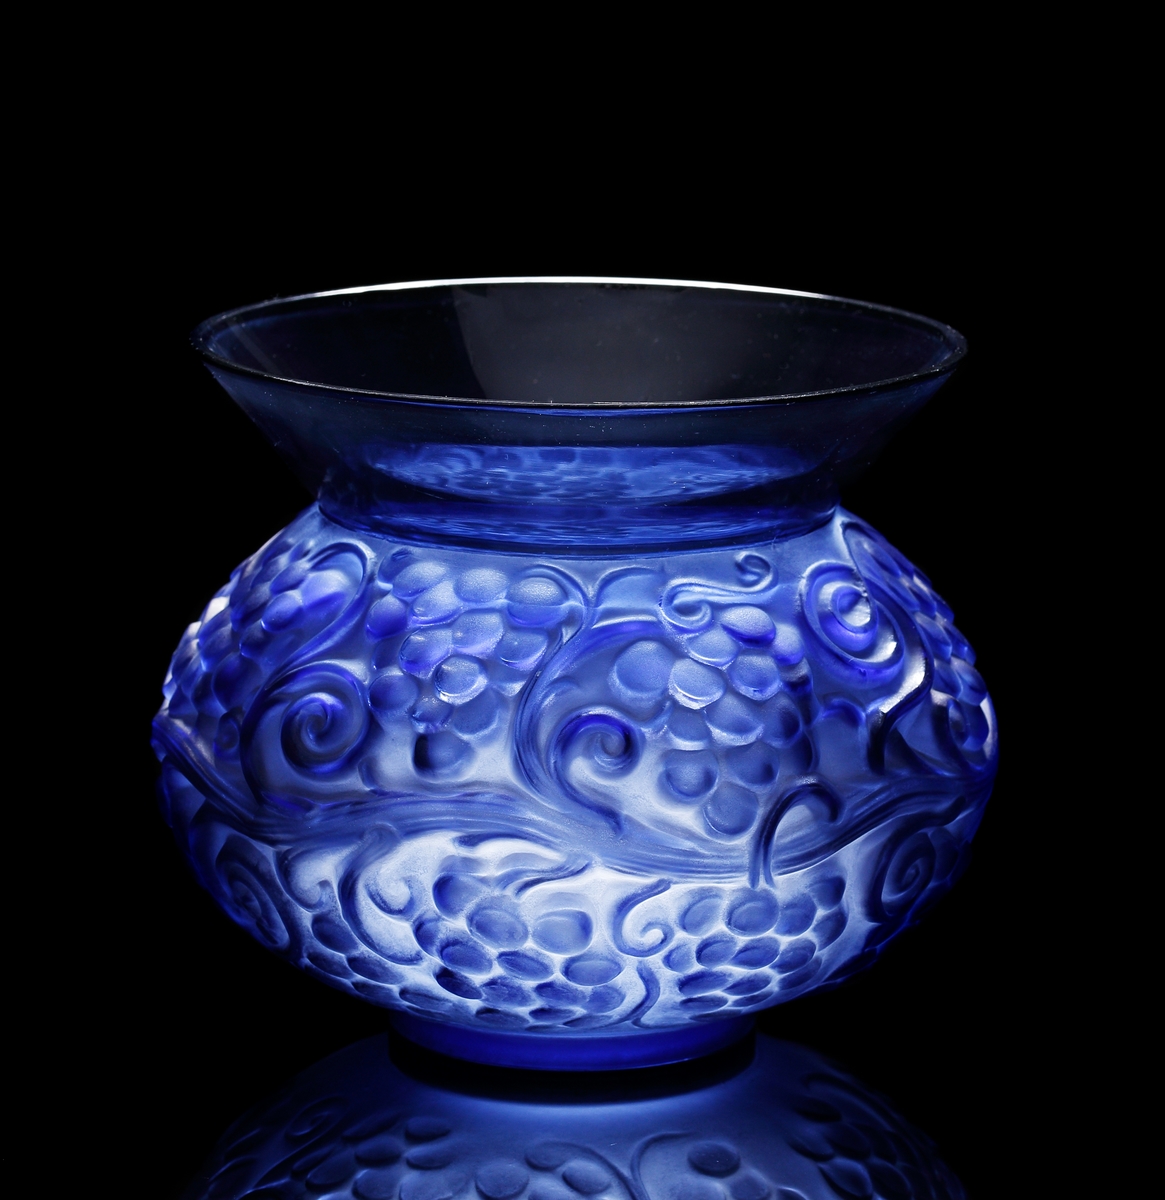 Halvopak blå vas med reliefmönster föreställande vinrankor. Utsidan till större delen matt, medan insidan är blank.